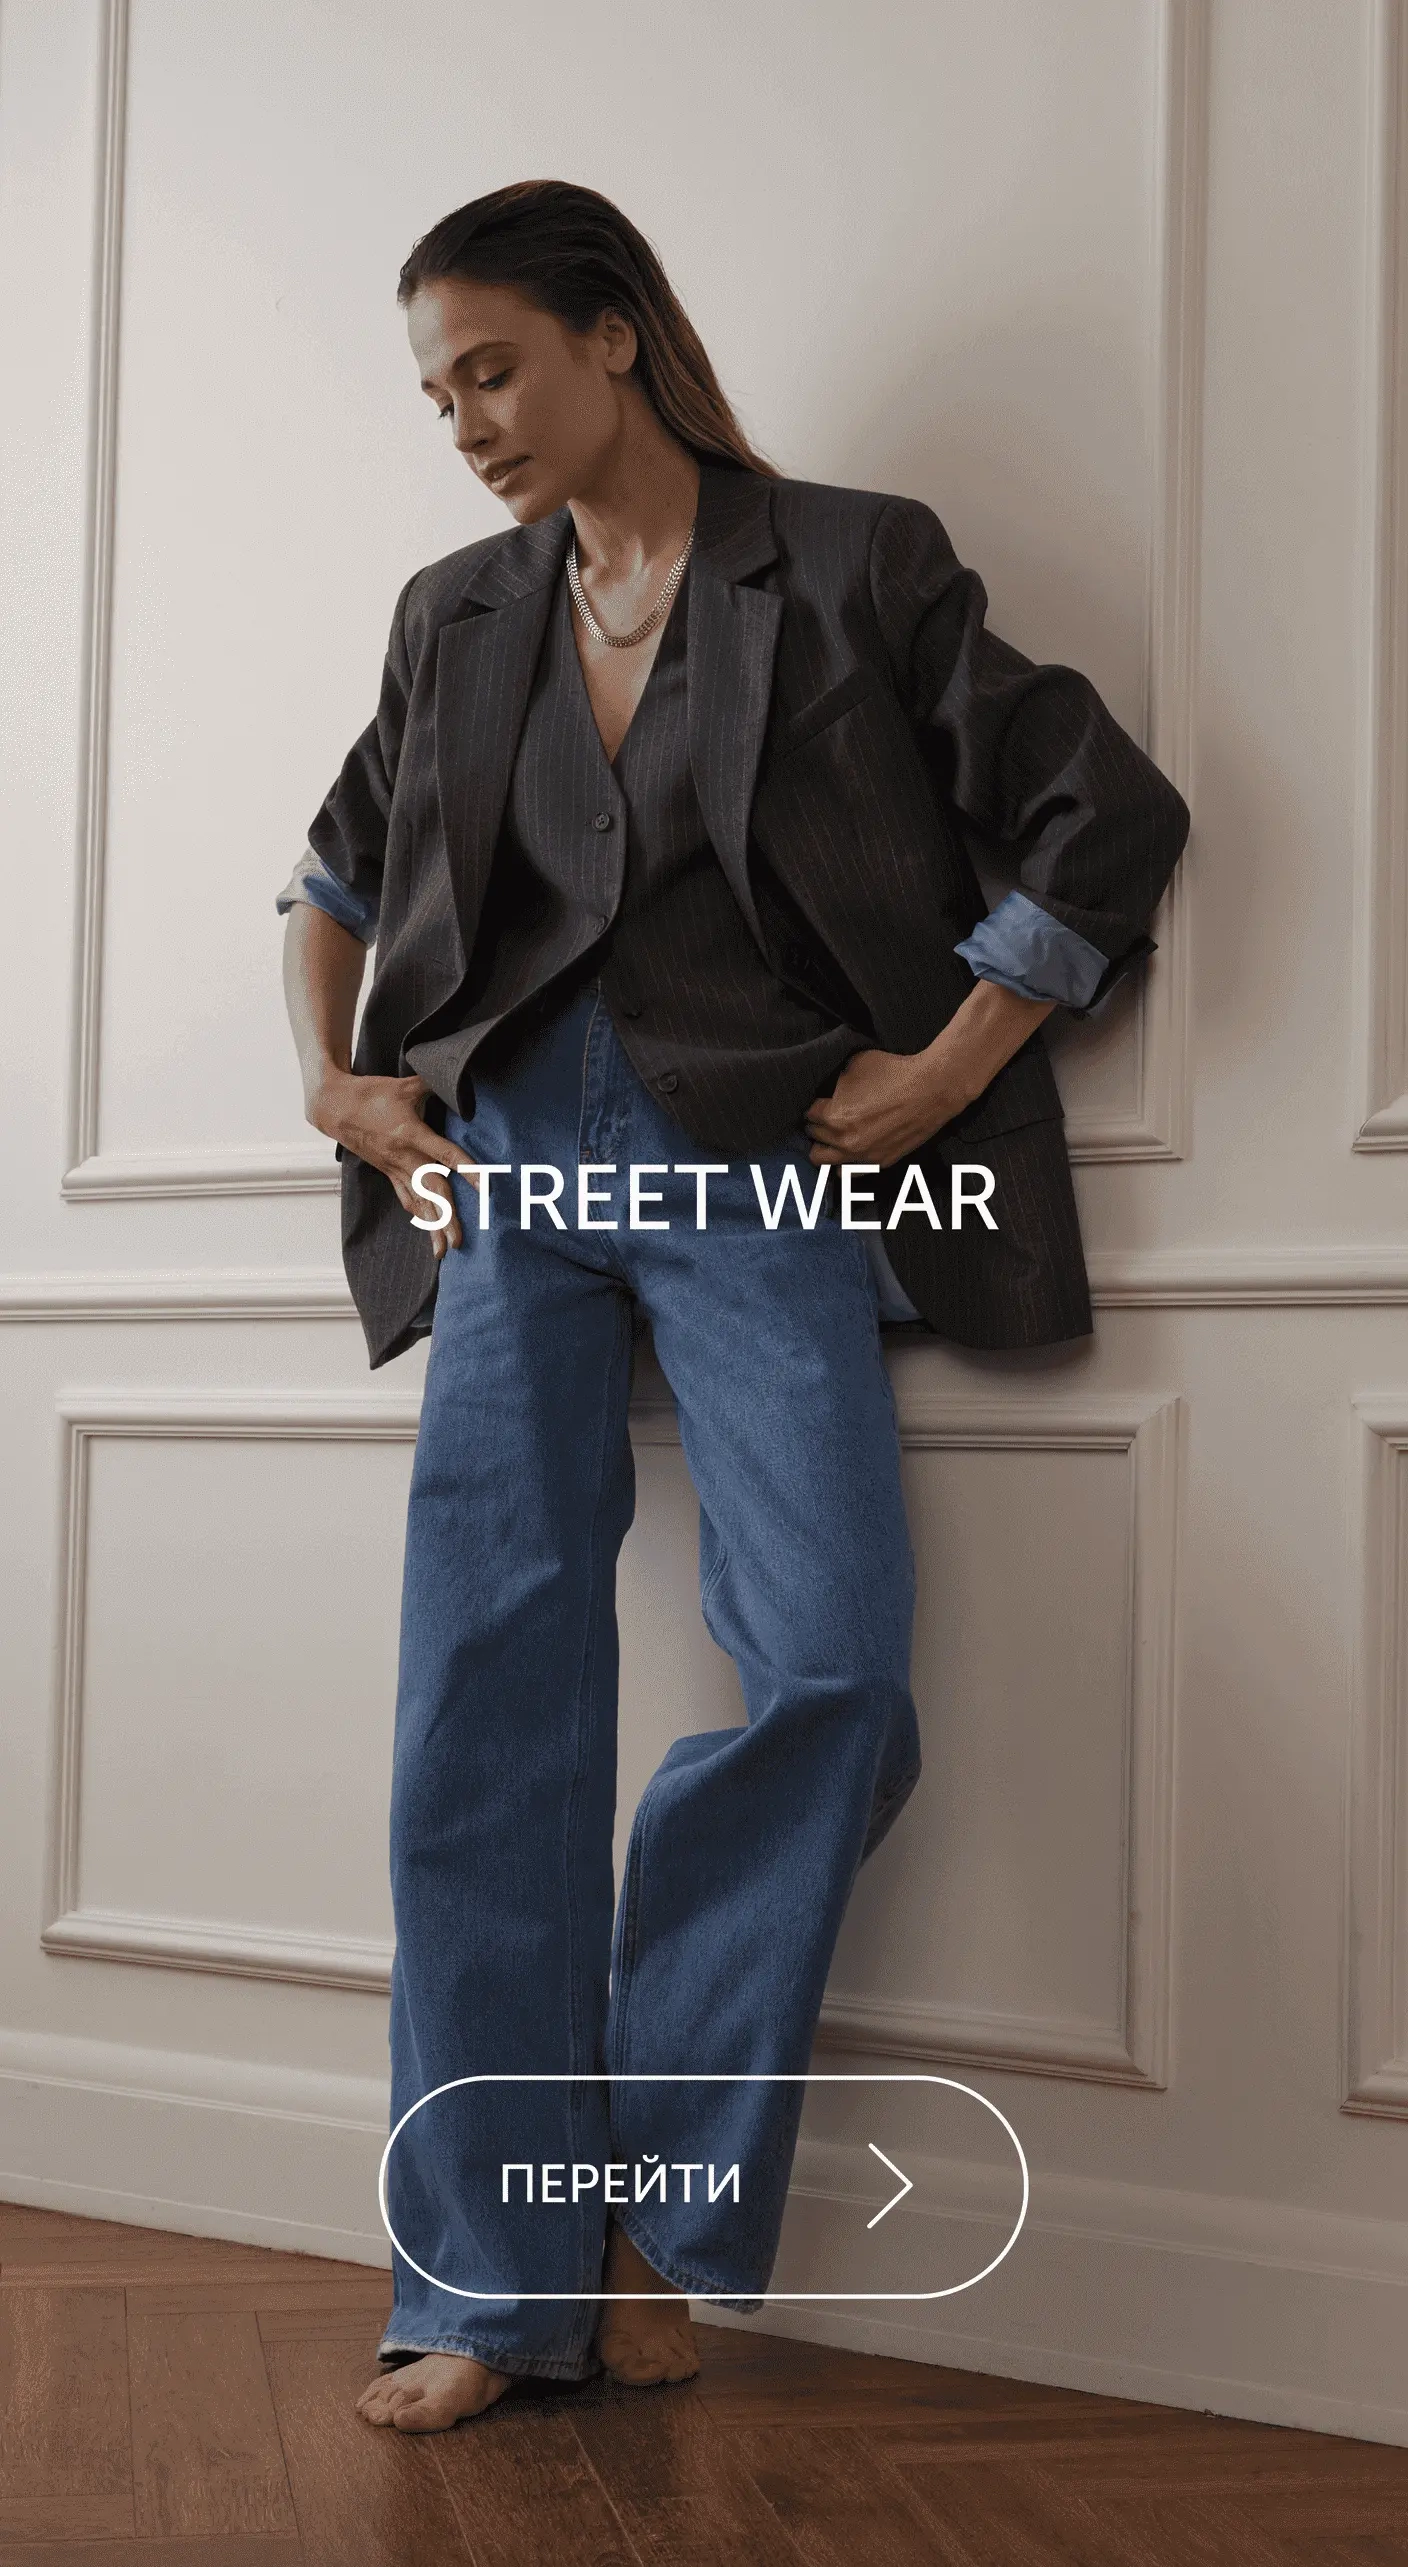 Стиль Street Wear